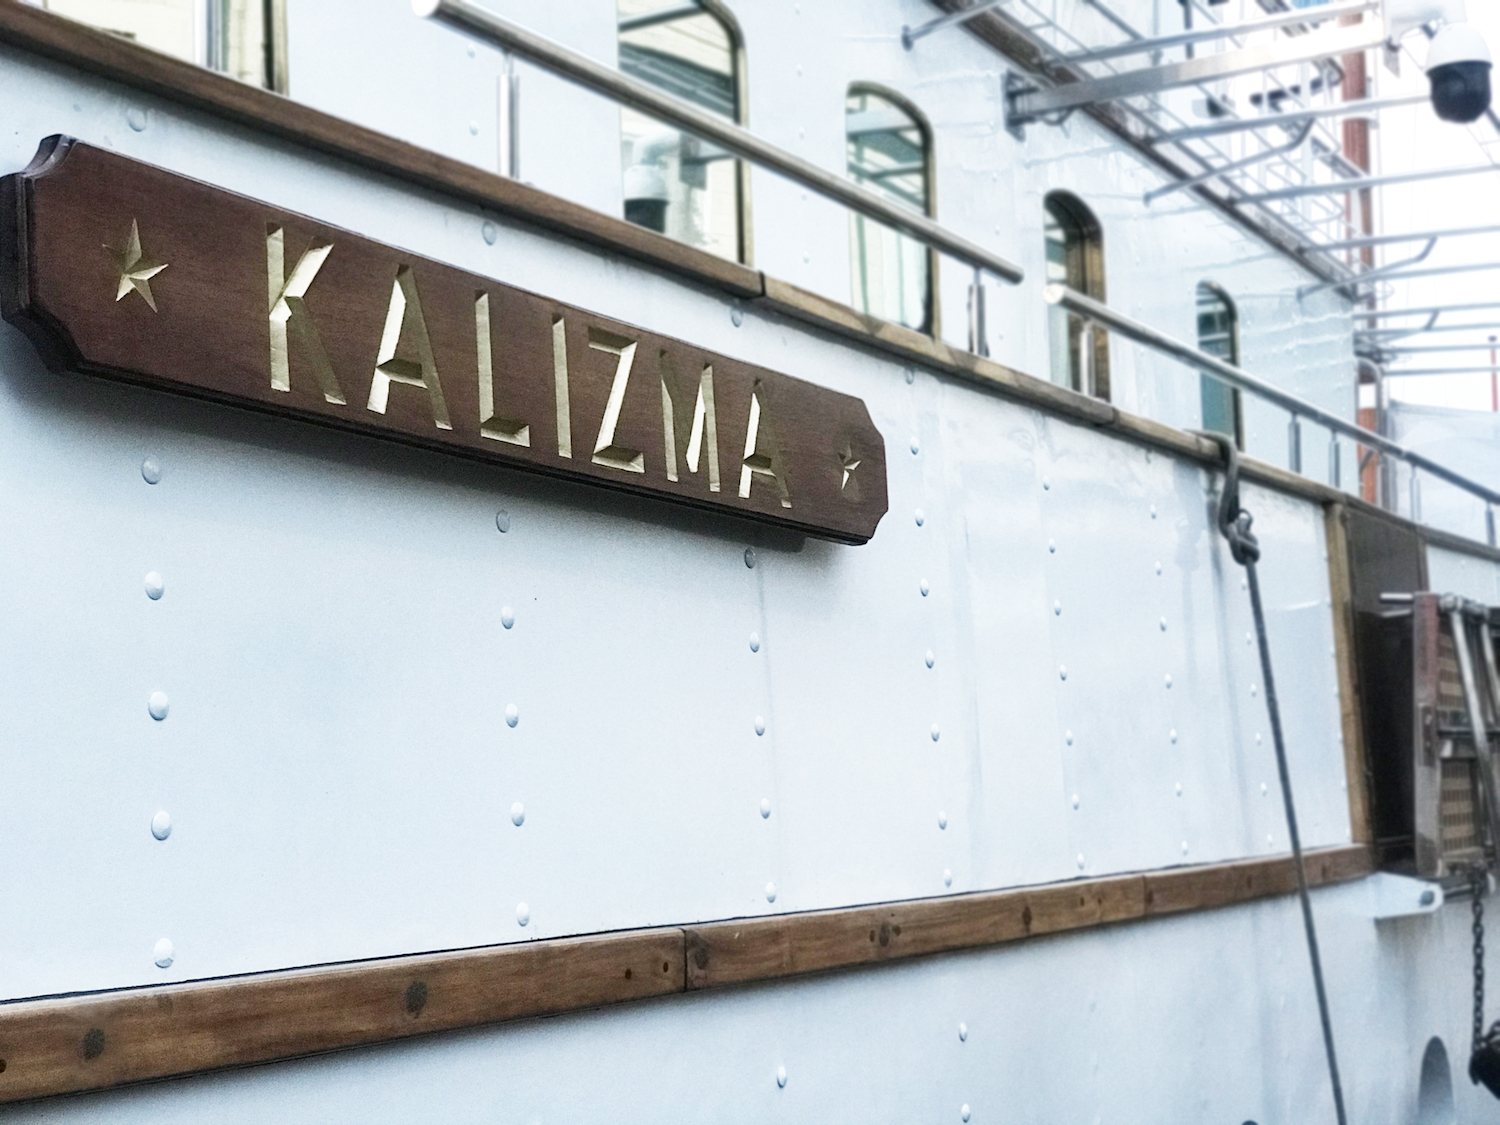 Kalizma Name